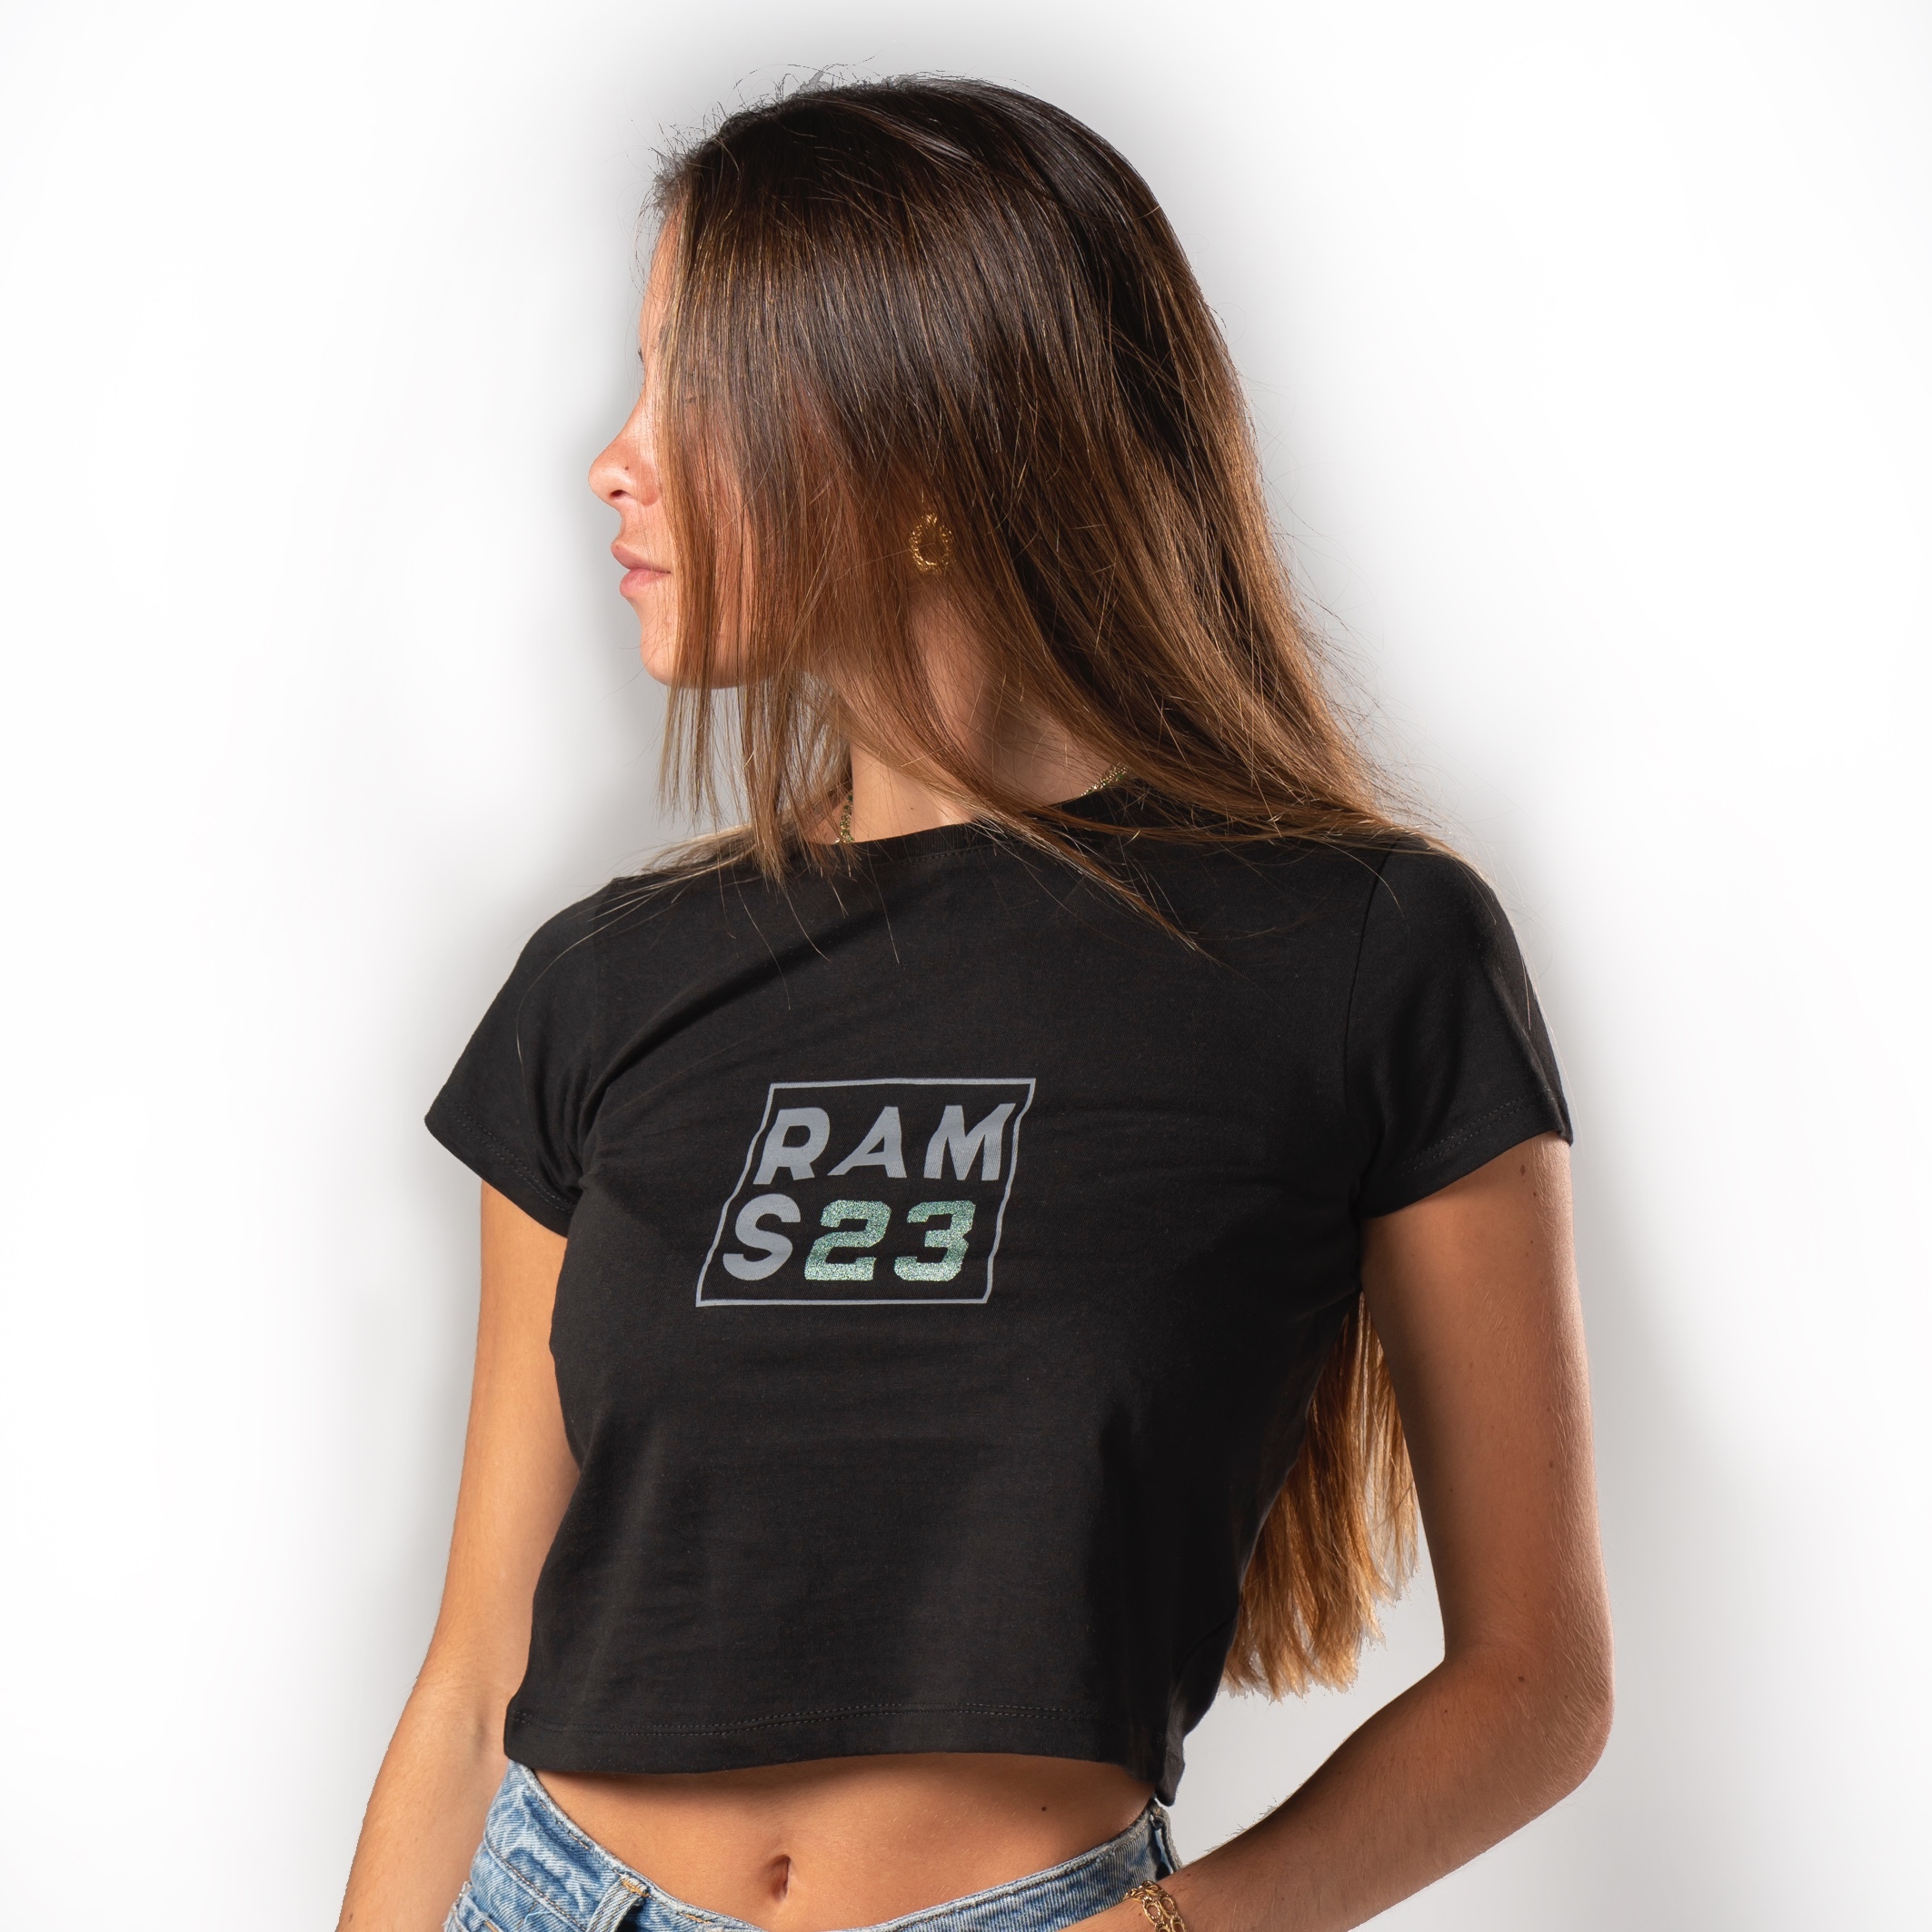 ven cómo Ceder Camiseta Rams 23 Square - negro | Sprinter MKP